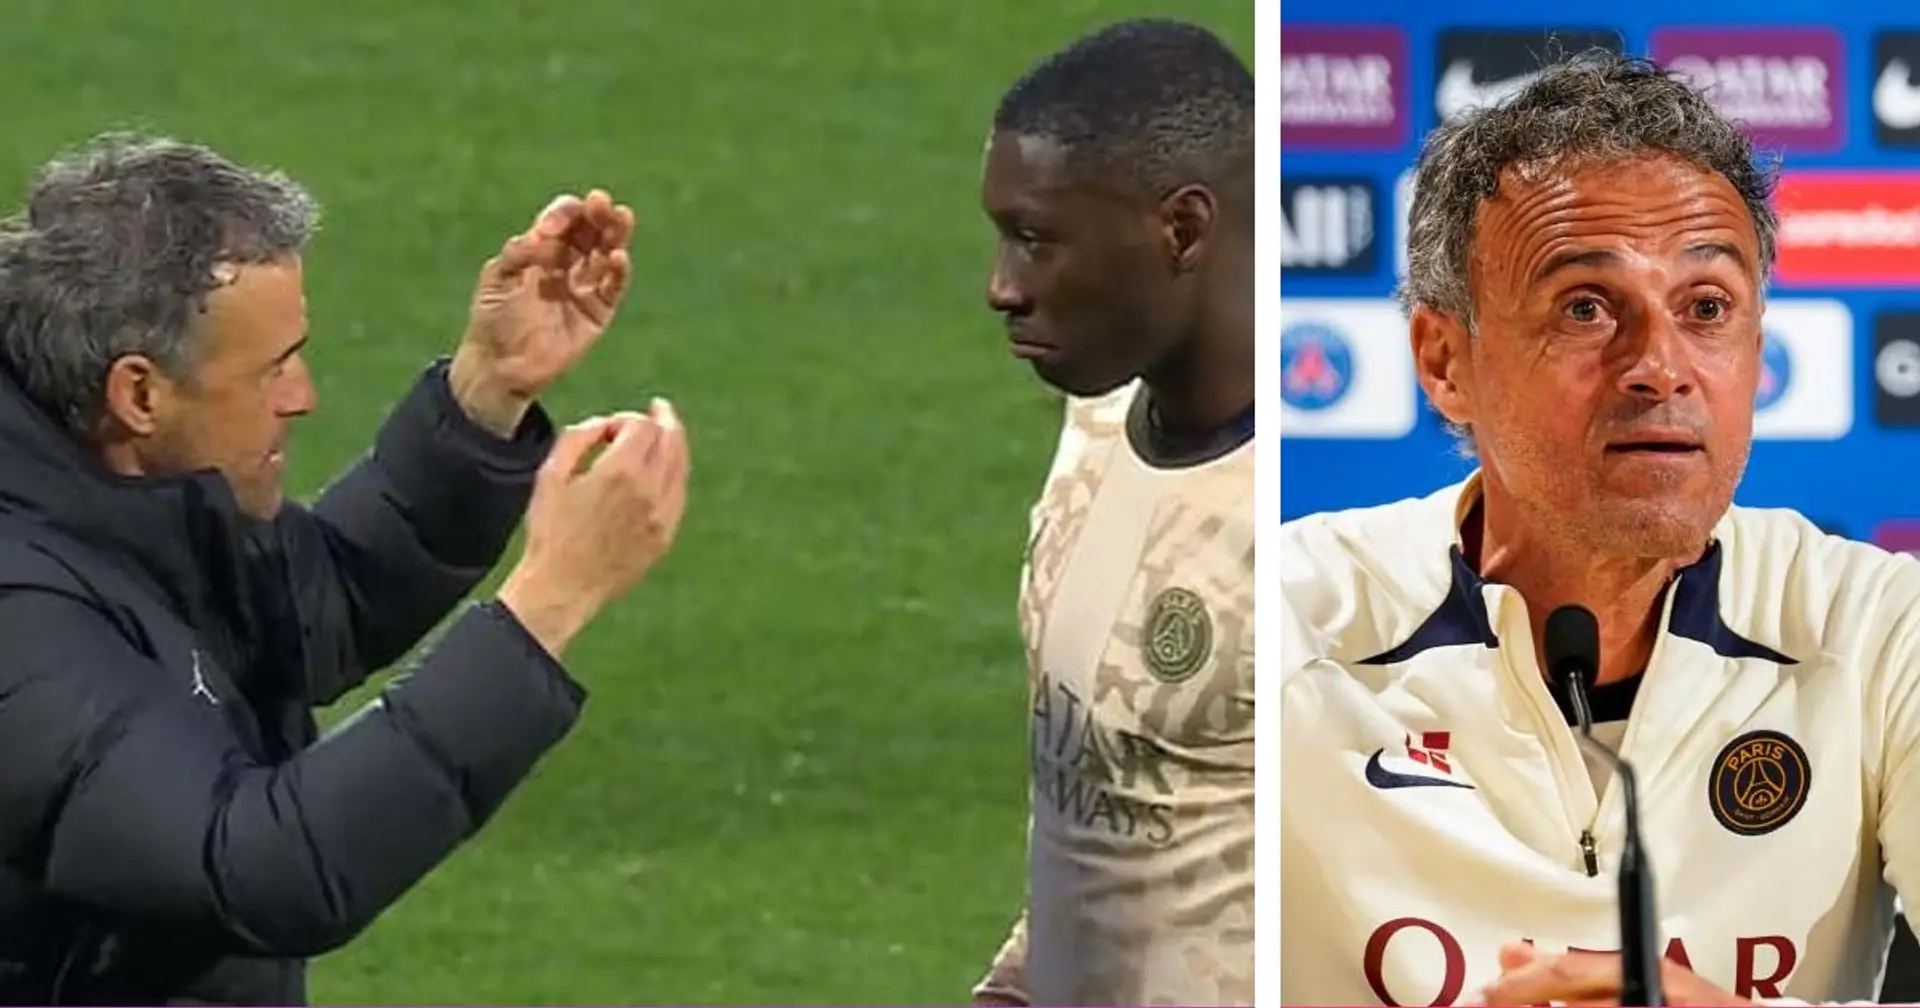 "Je suis à ses côtés", Luis Enrique explique son geste envers Kolo Muani à la fin du match face à Lorient